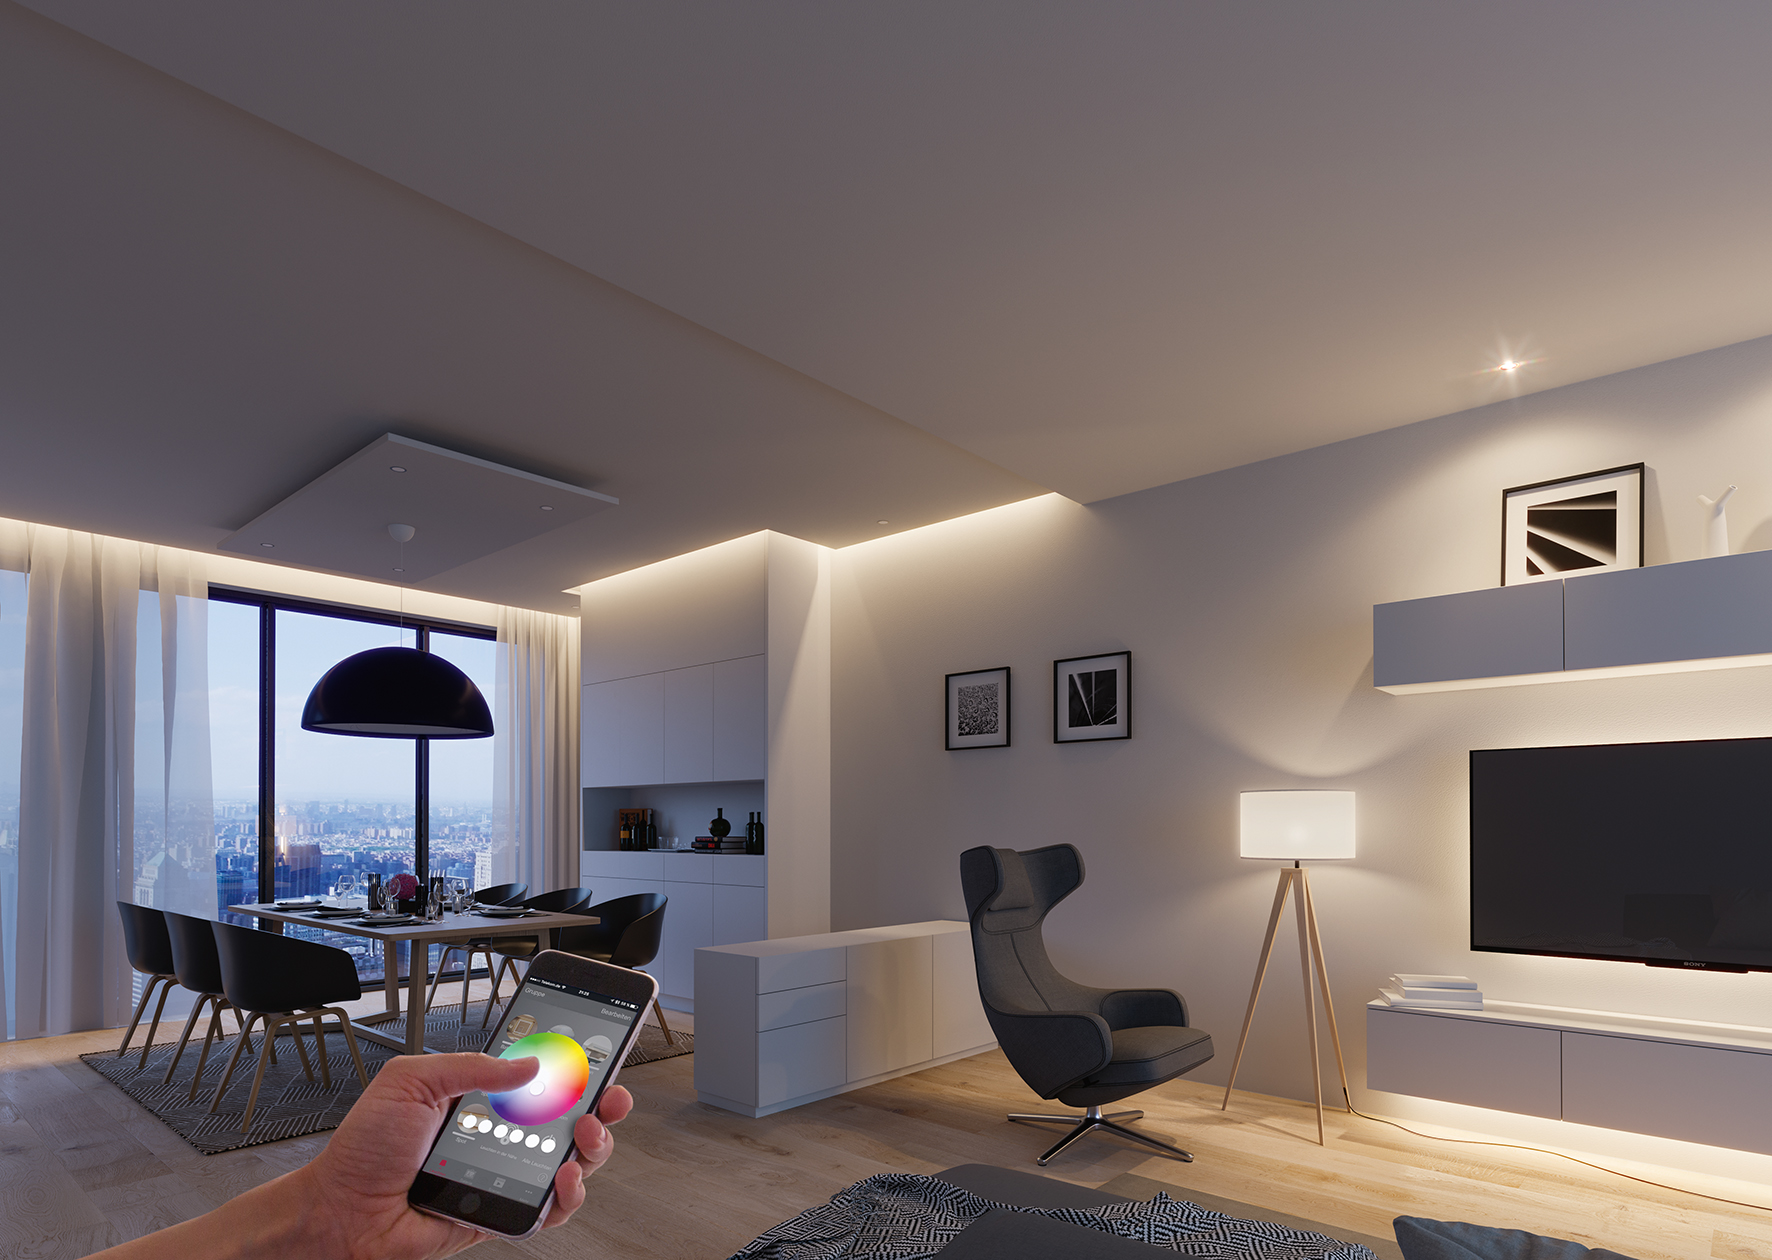 Häfele Connect, en app til smartphone og tablets som Häfele selv har udviklet, forbinder og styrer lys og lyd samt elektriske drivenheder i møbler. Häfele er også pioner på Smart Home-området.